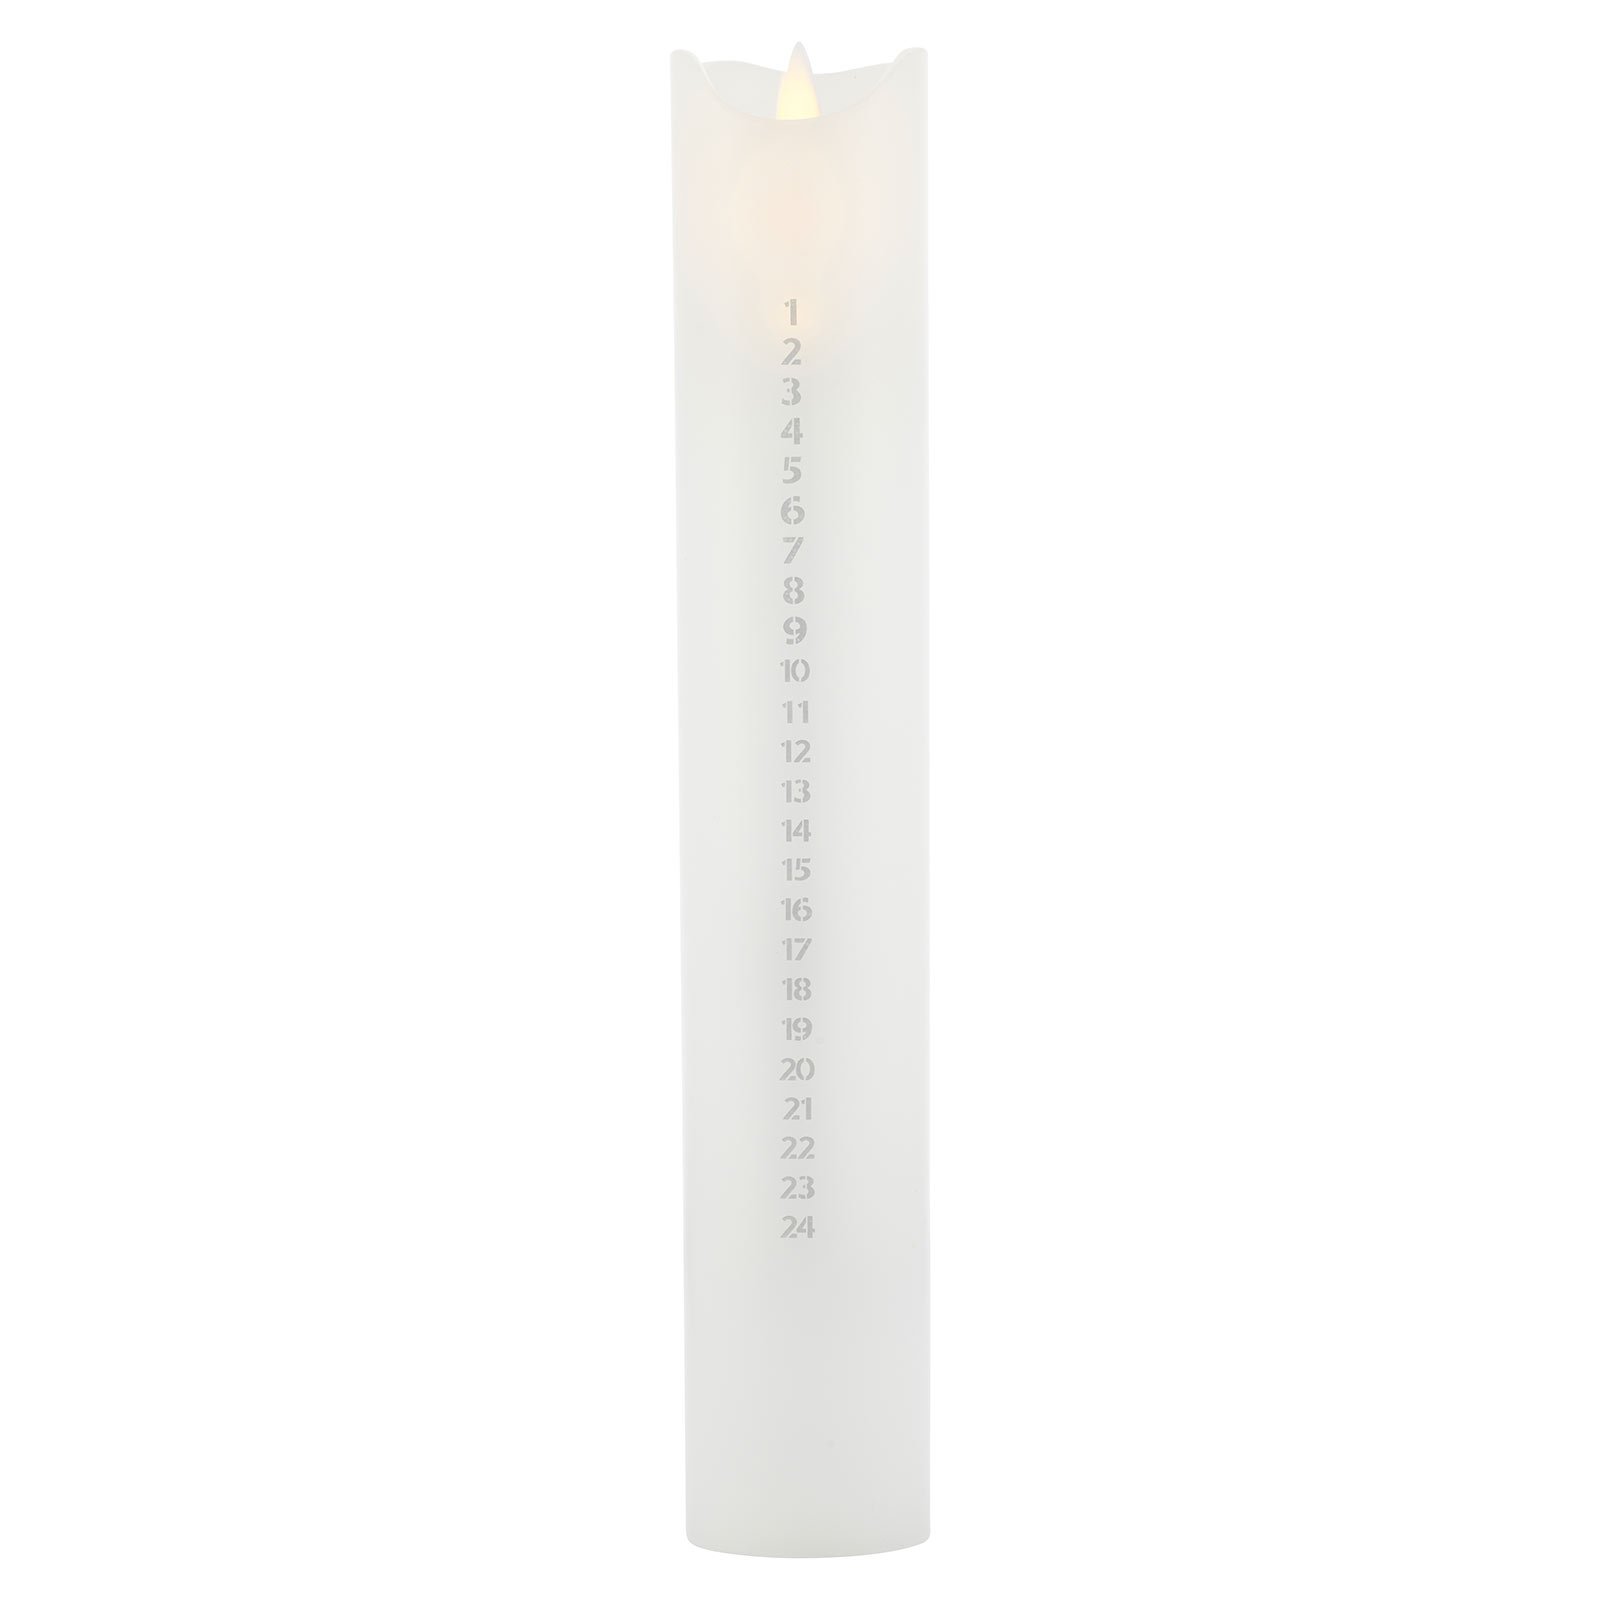 Vela LED Sara Calendar, blanca/plateada, altura 29 cm